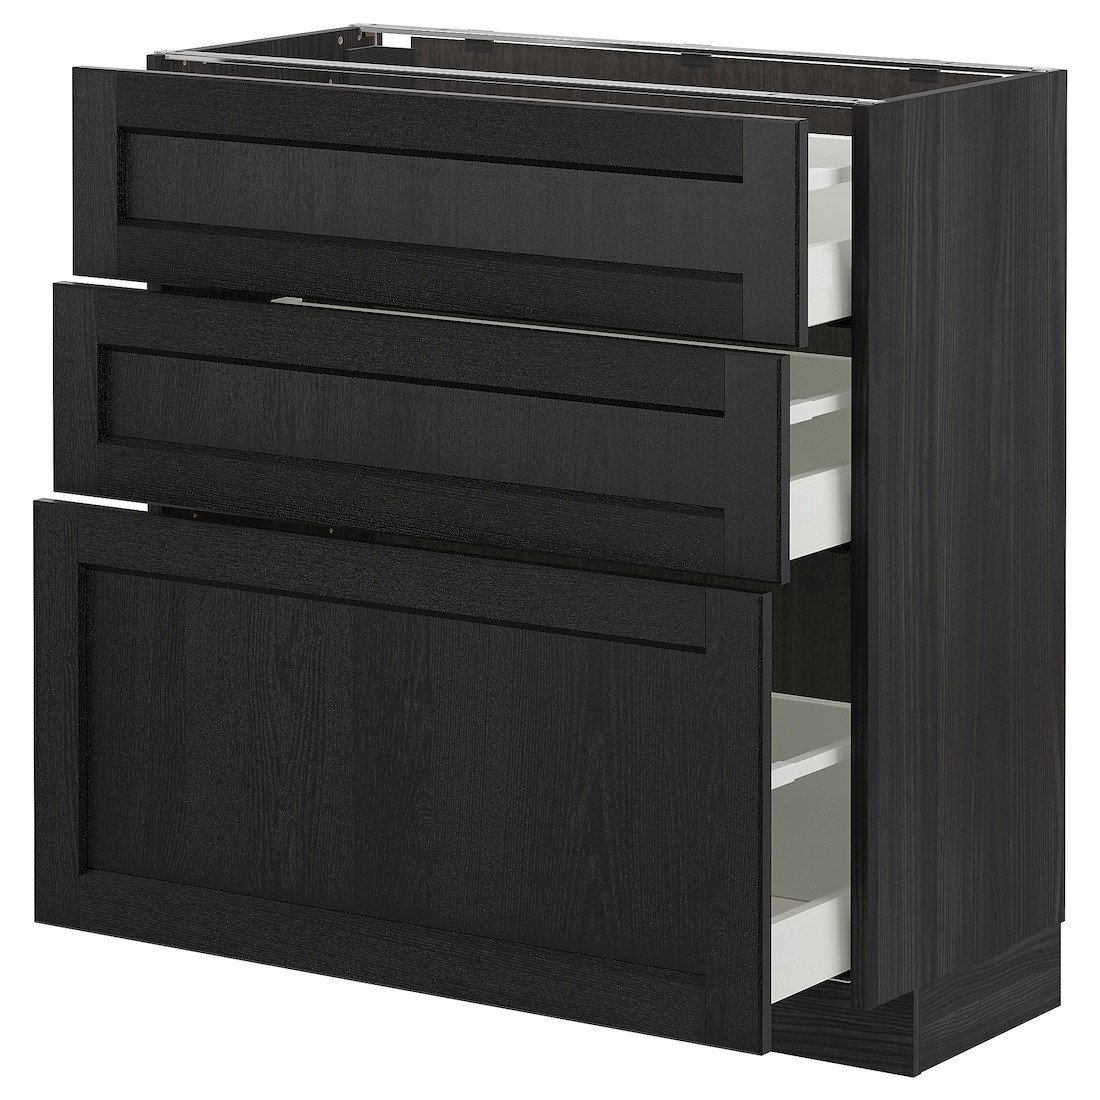 IKEA METOD МЕТОД / MAXIMERA МАКСИМЕРА Напольный шкаф с 3 ящиками, черный / Lerhyttan черная морилка, 80x37 см 39260049 | 392.600.49